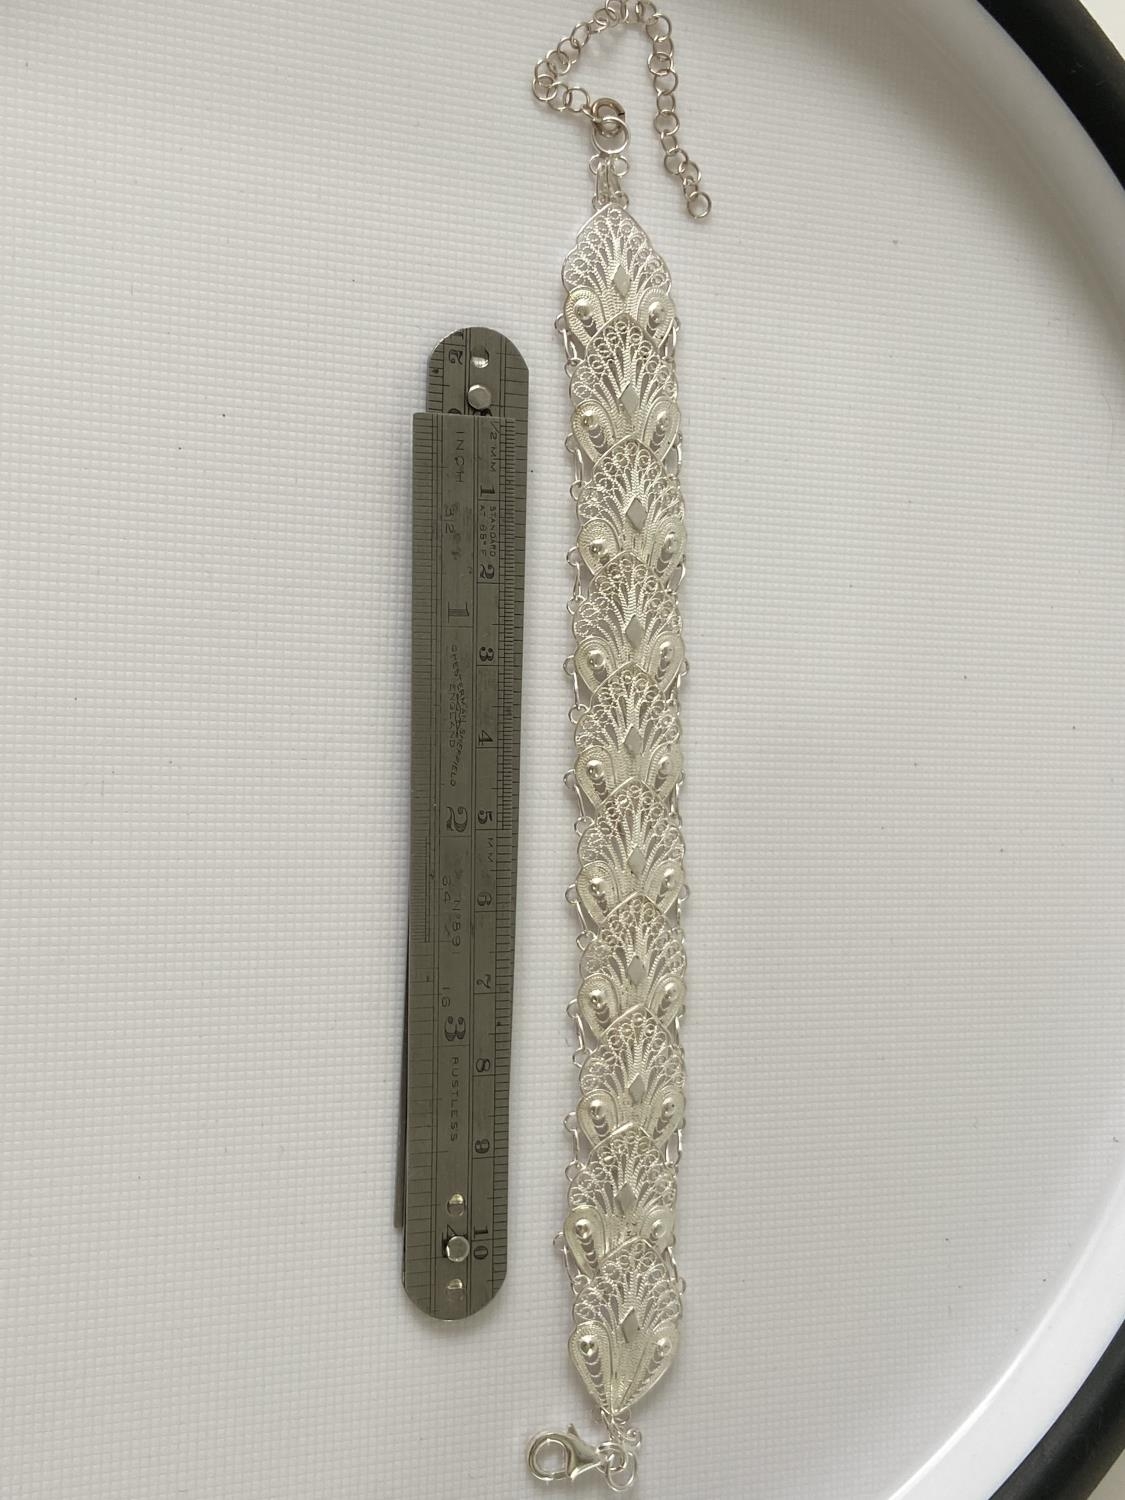 A Silver filigree bracelet [20cm in length]